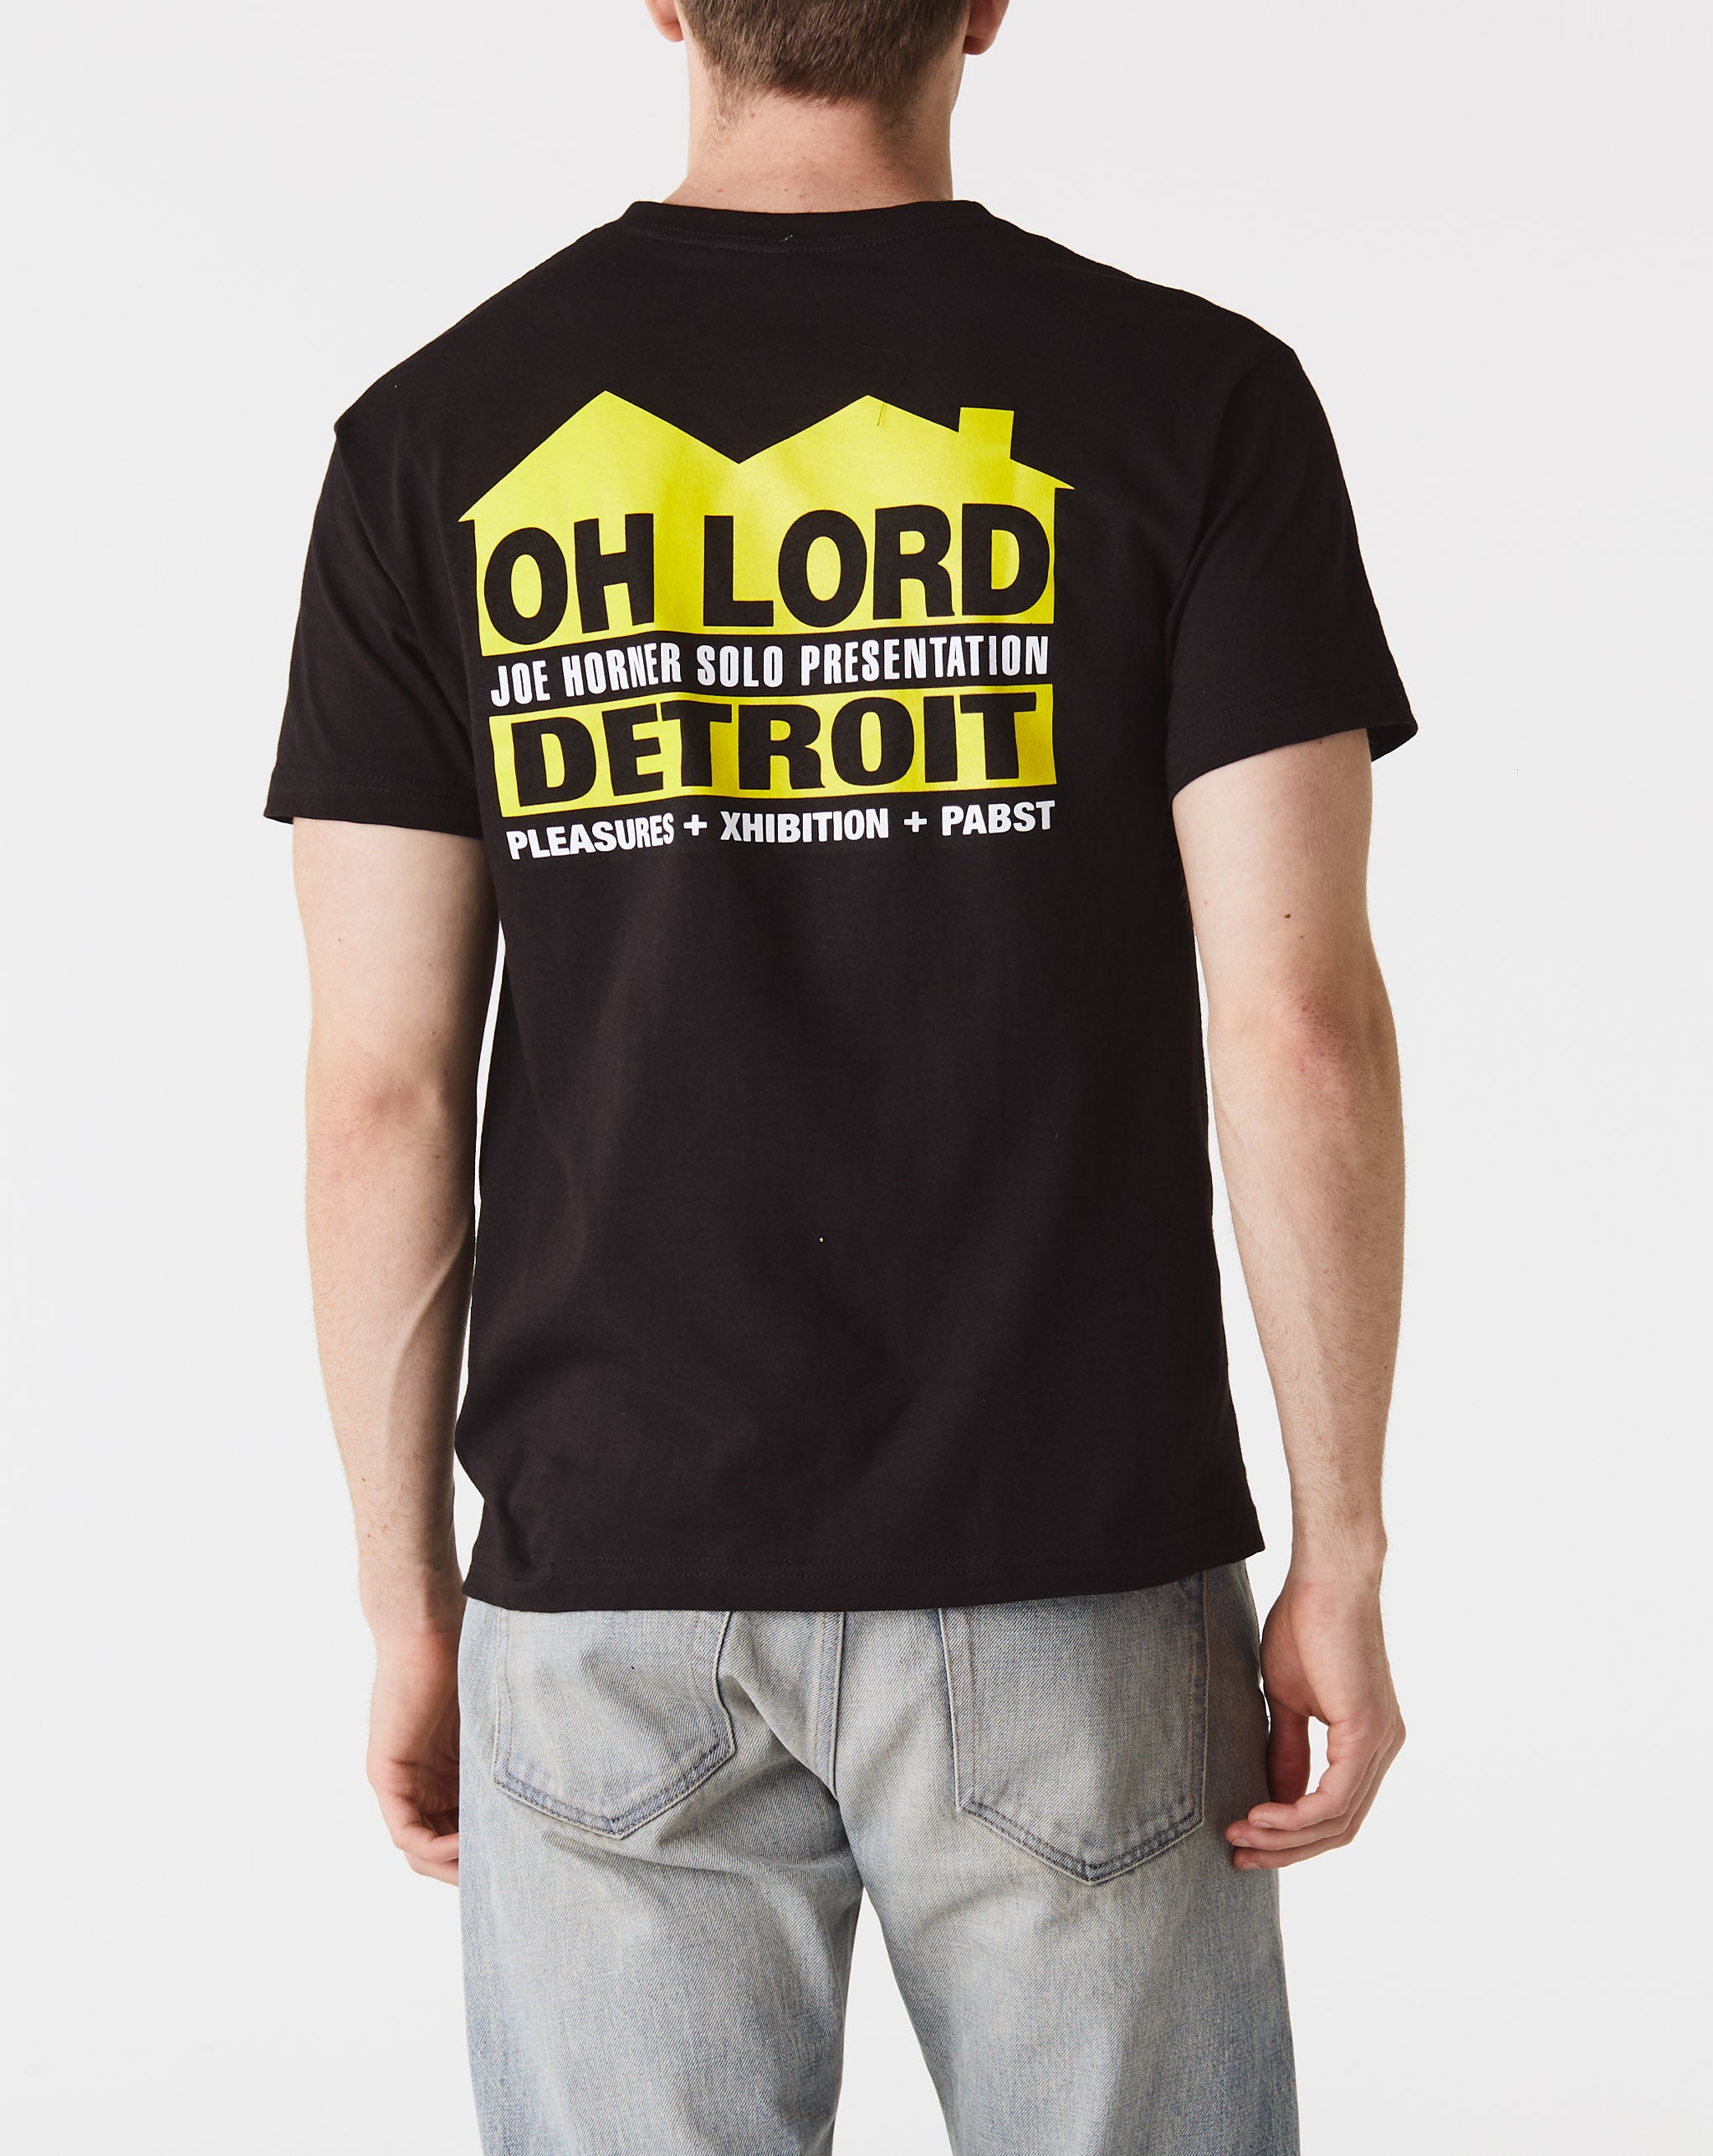 Joe Horner 'Oh Lord' House Sign T-Shirt  - Cheap Erlebniswelt-fliegenfischen Jordan outlet